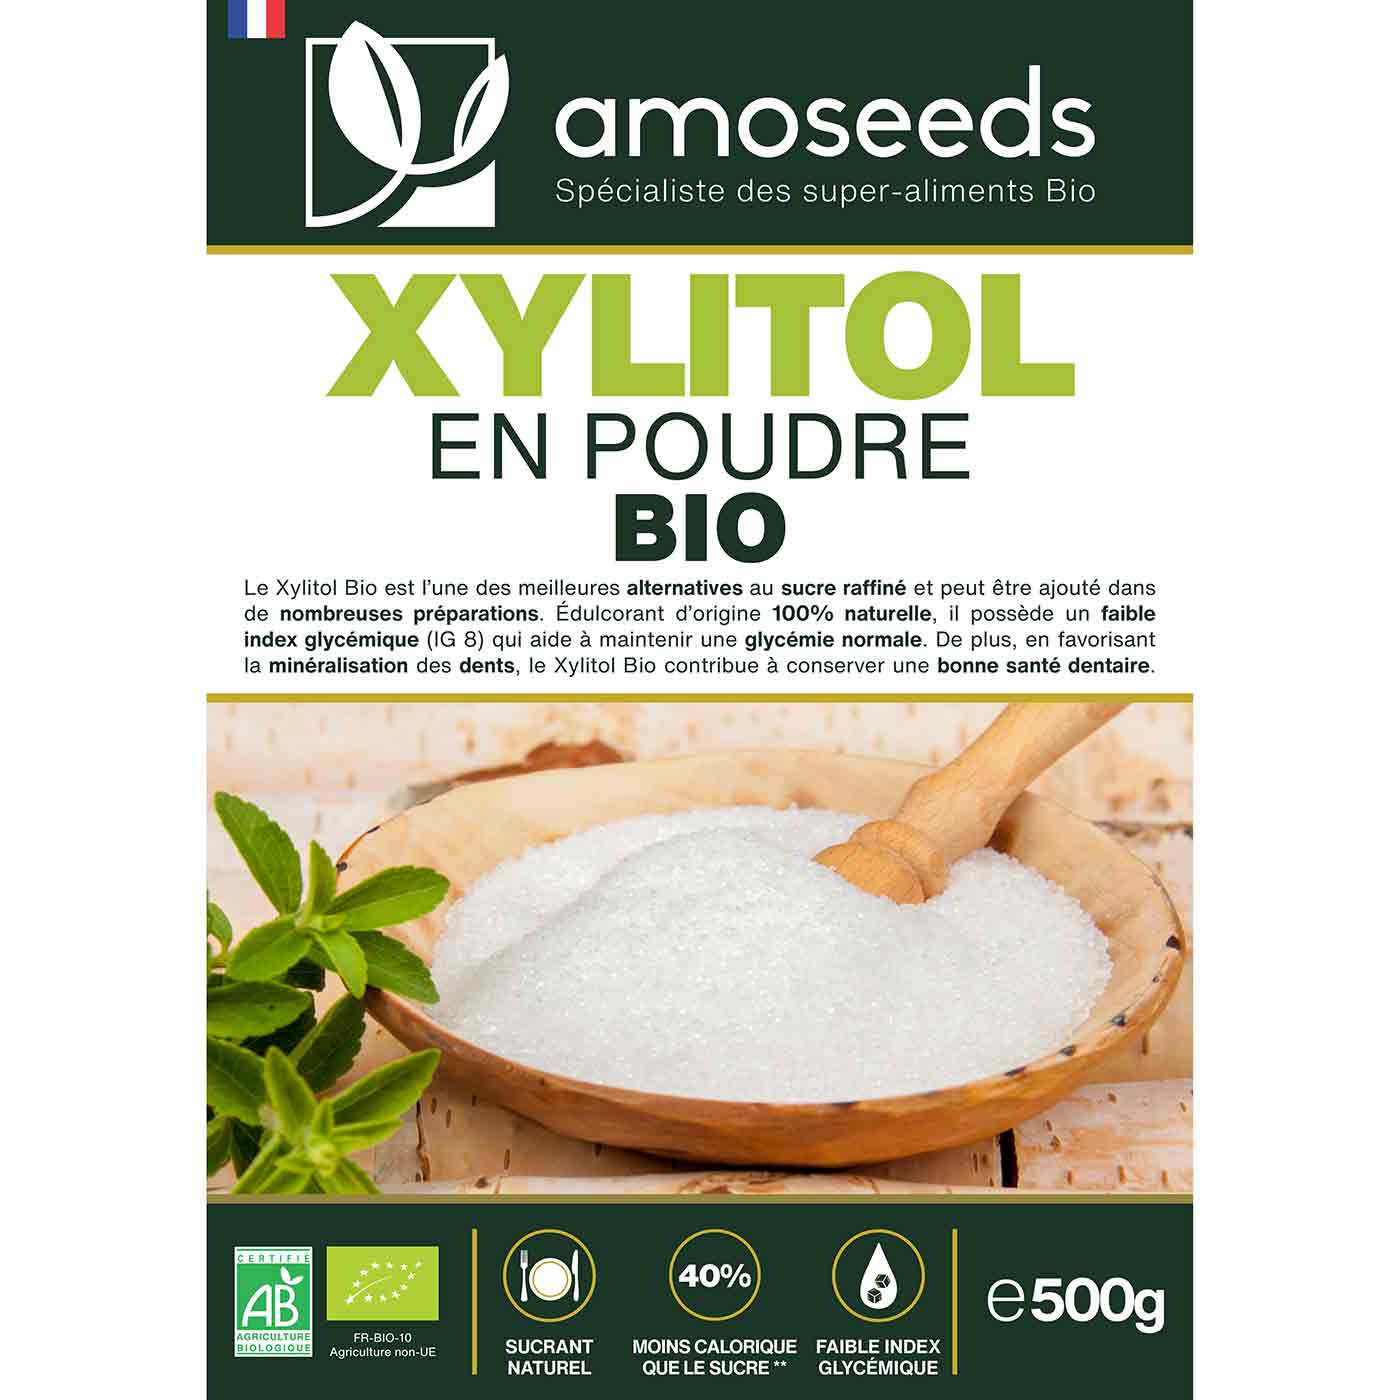 Xylitol Bio 1KG amoseeds specialiste des super aliments bio,